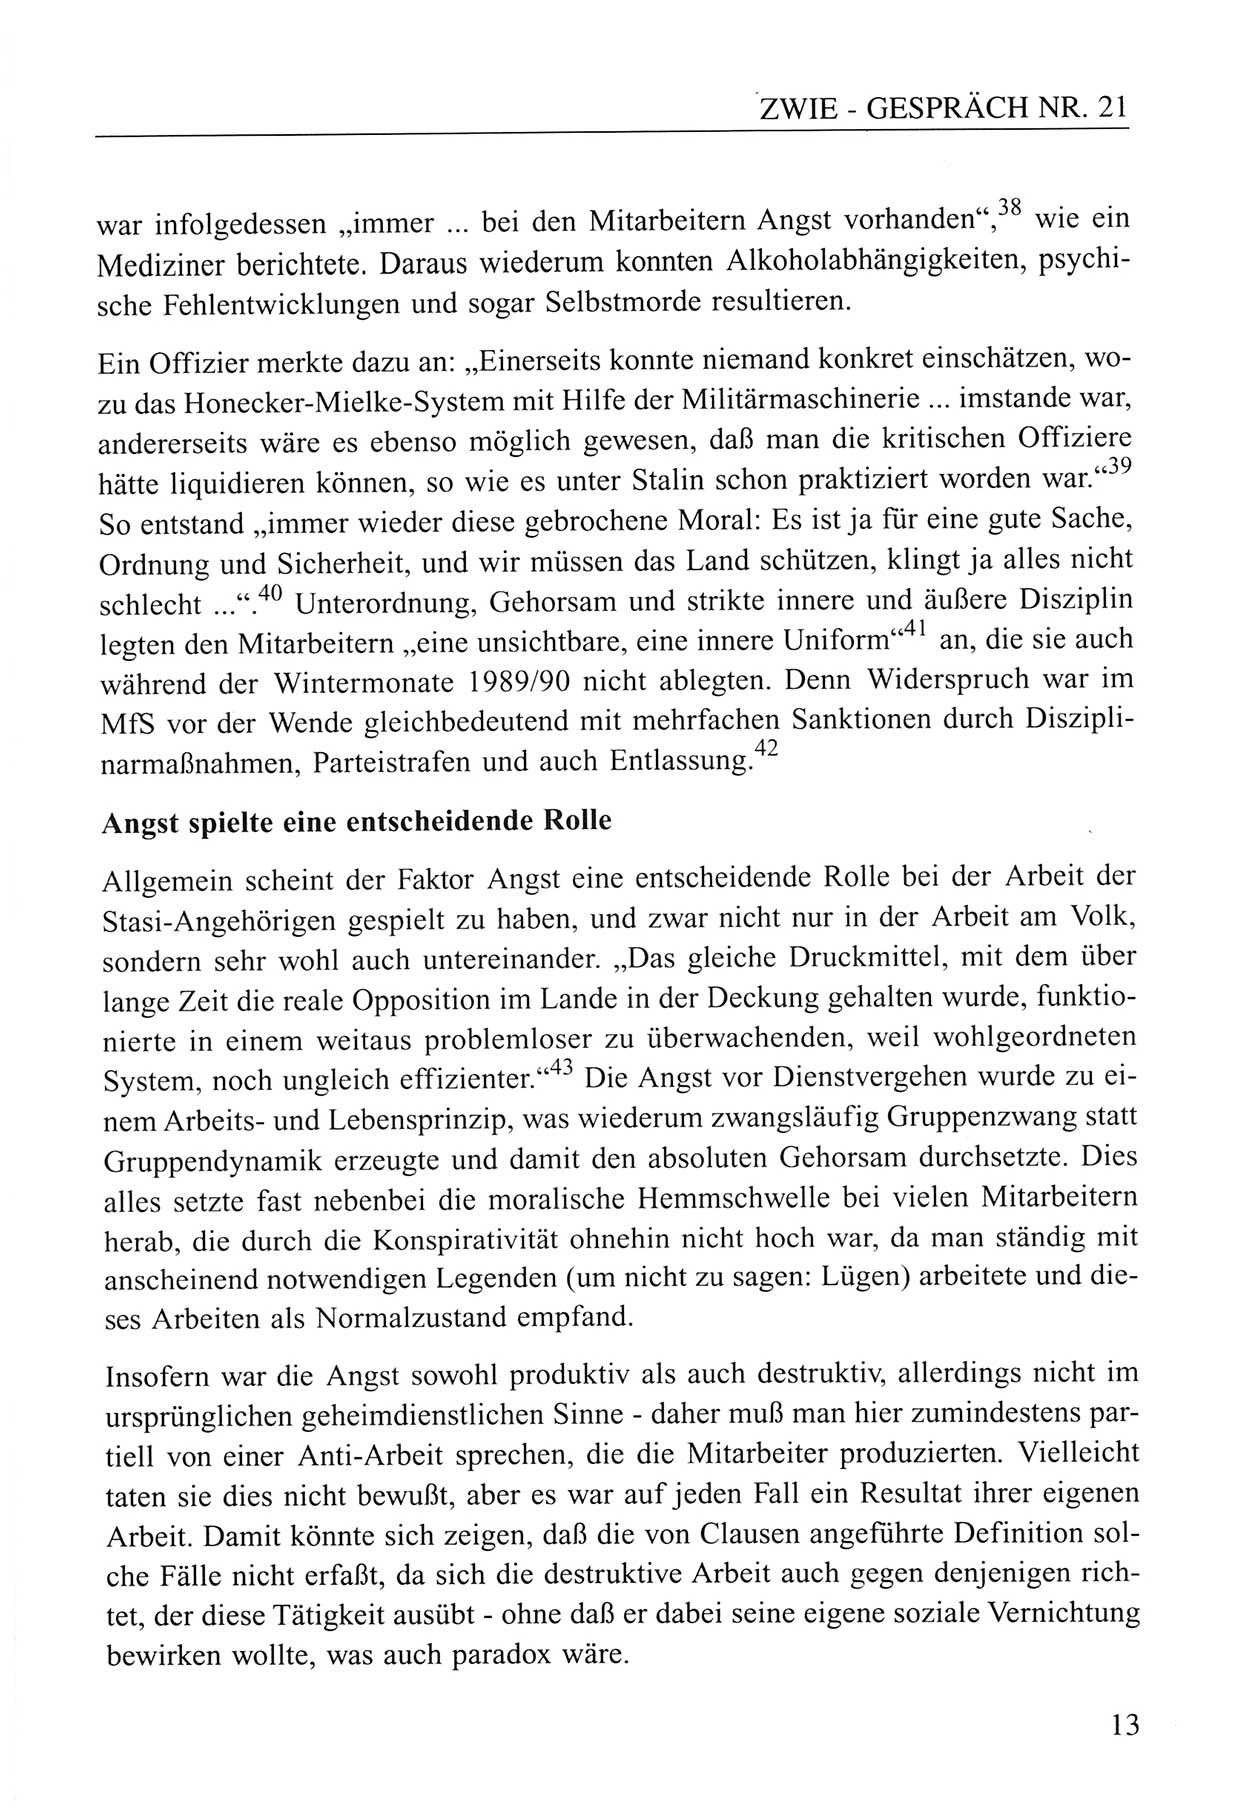 Zwie-Gespräch, Beiträge zum Umgang mit der Staatssicherheits-Vergangenheit [Deutsche Demokratische Republik (DDR)], Ausgabe Nr. 21, Berlin 1994, Seite 13 (Zwie-Gespr. Ausg. 21 1994, S. 13)